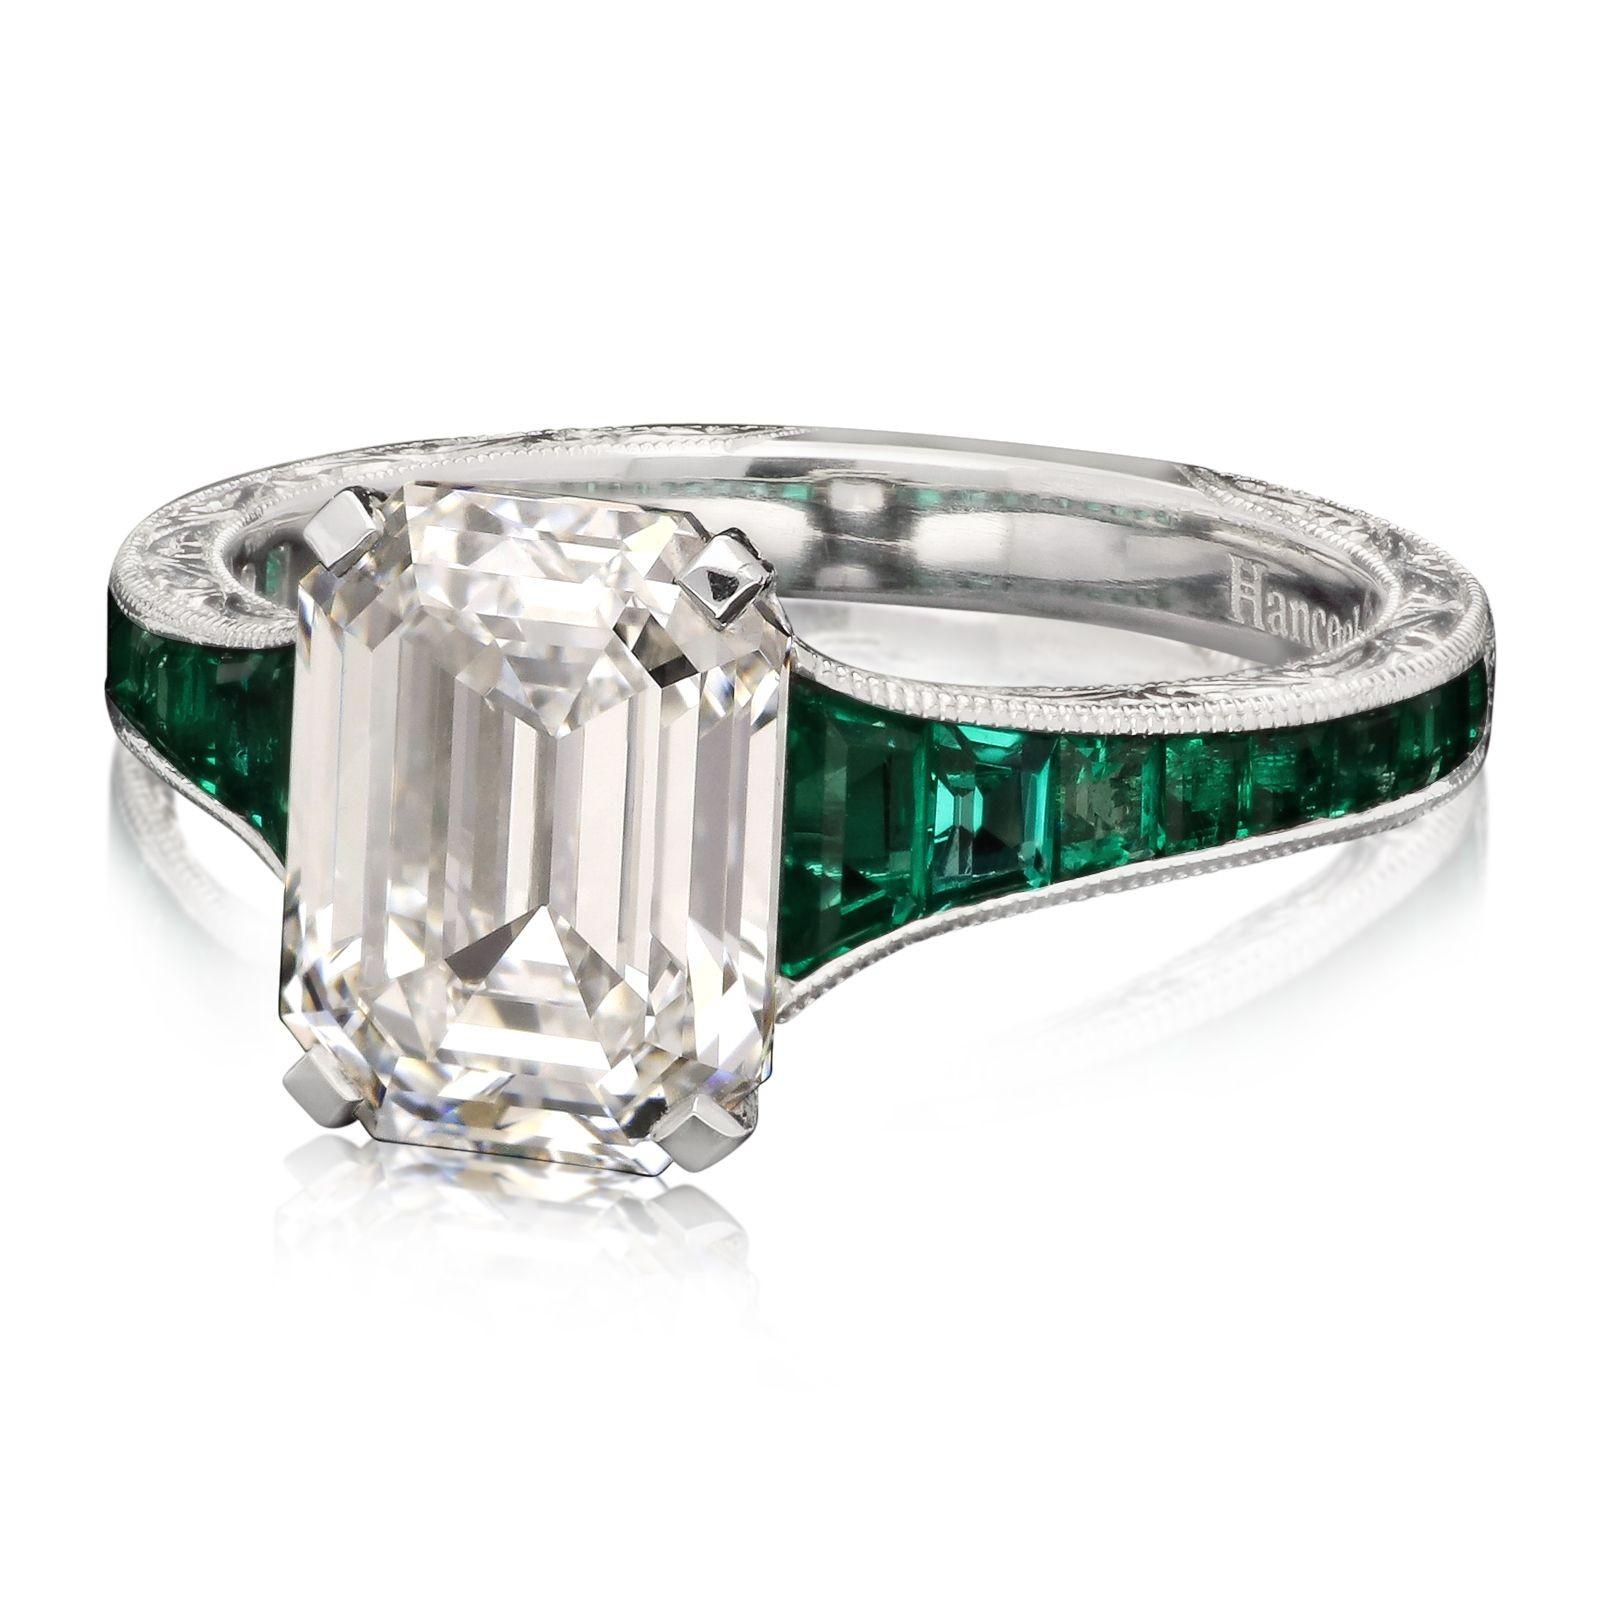 Ein wunderschöner Diamant- und Smaragdring von Hancocks, in der Mitte besetzt mit einem atemberaubenden Diamanten im Smaragdschliff mit einem Gewicht von 2,85 ct. und einer Farbe von D und einer Reinheit von VS2, in einer Eckklauenfassung zwischen